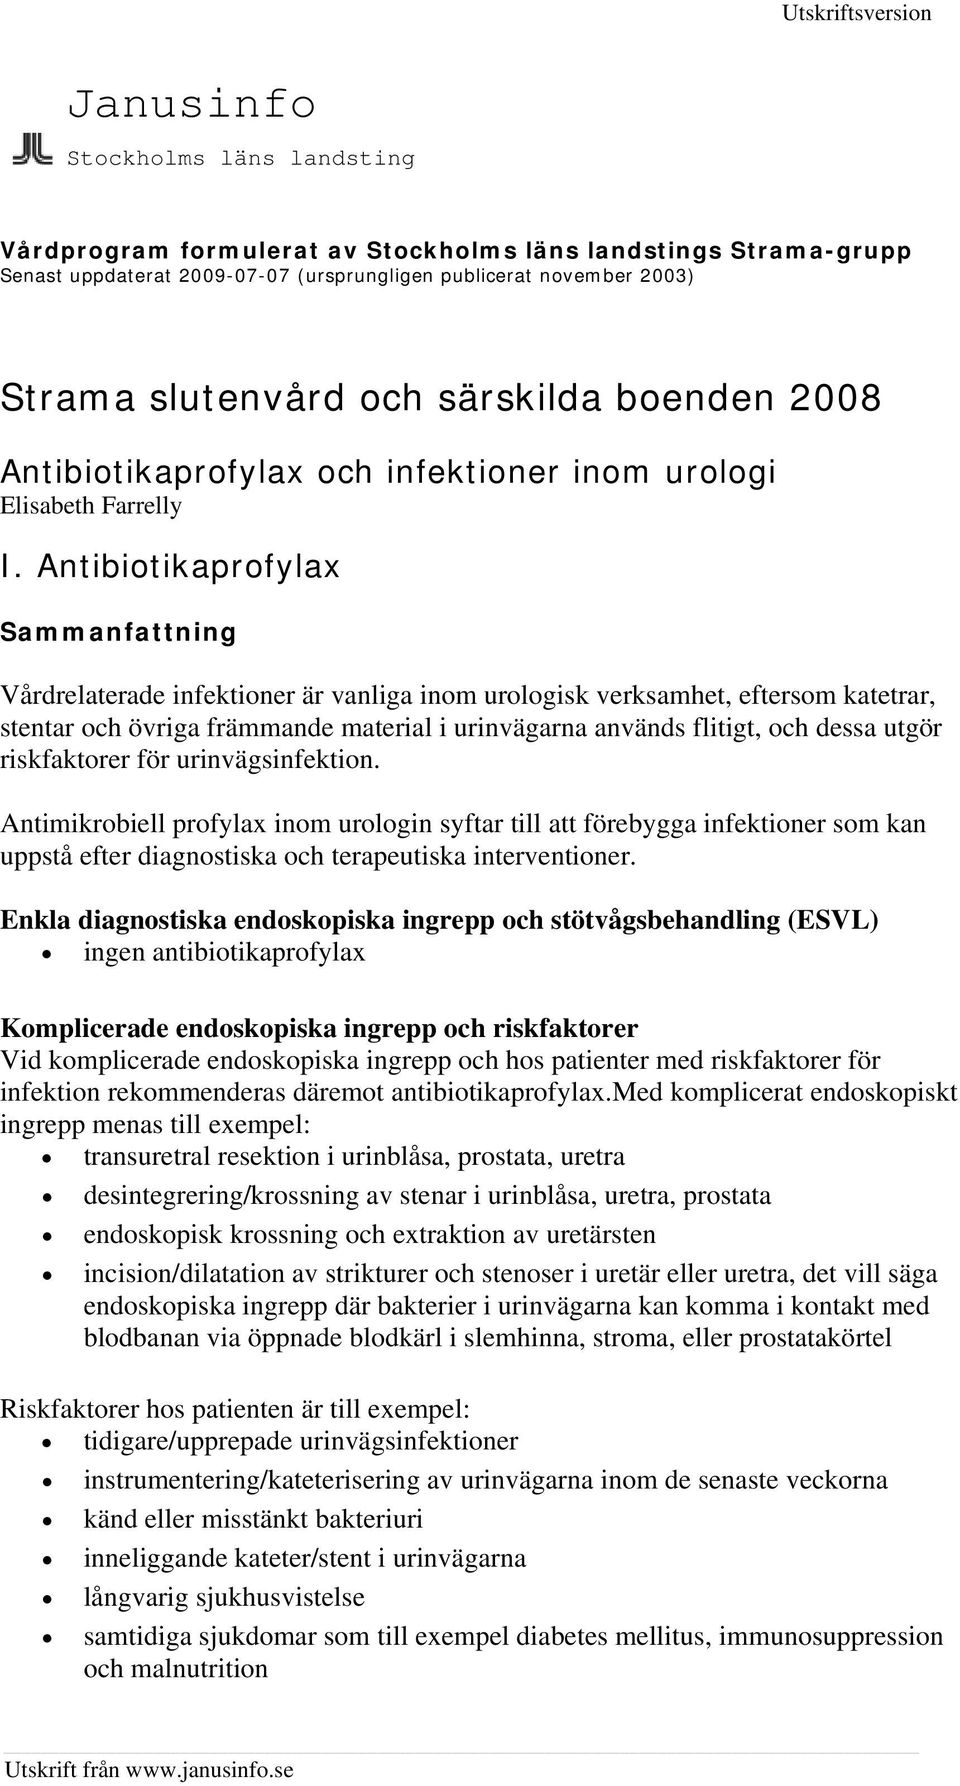 Antibiotikaprofylax Vårdrelaterade infektioner är vanliga inom urologisk verksamhet, eftersom katetrar, stentar och övriga främmande material i urinvägarna används flitigt, och dessa utgör